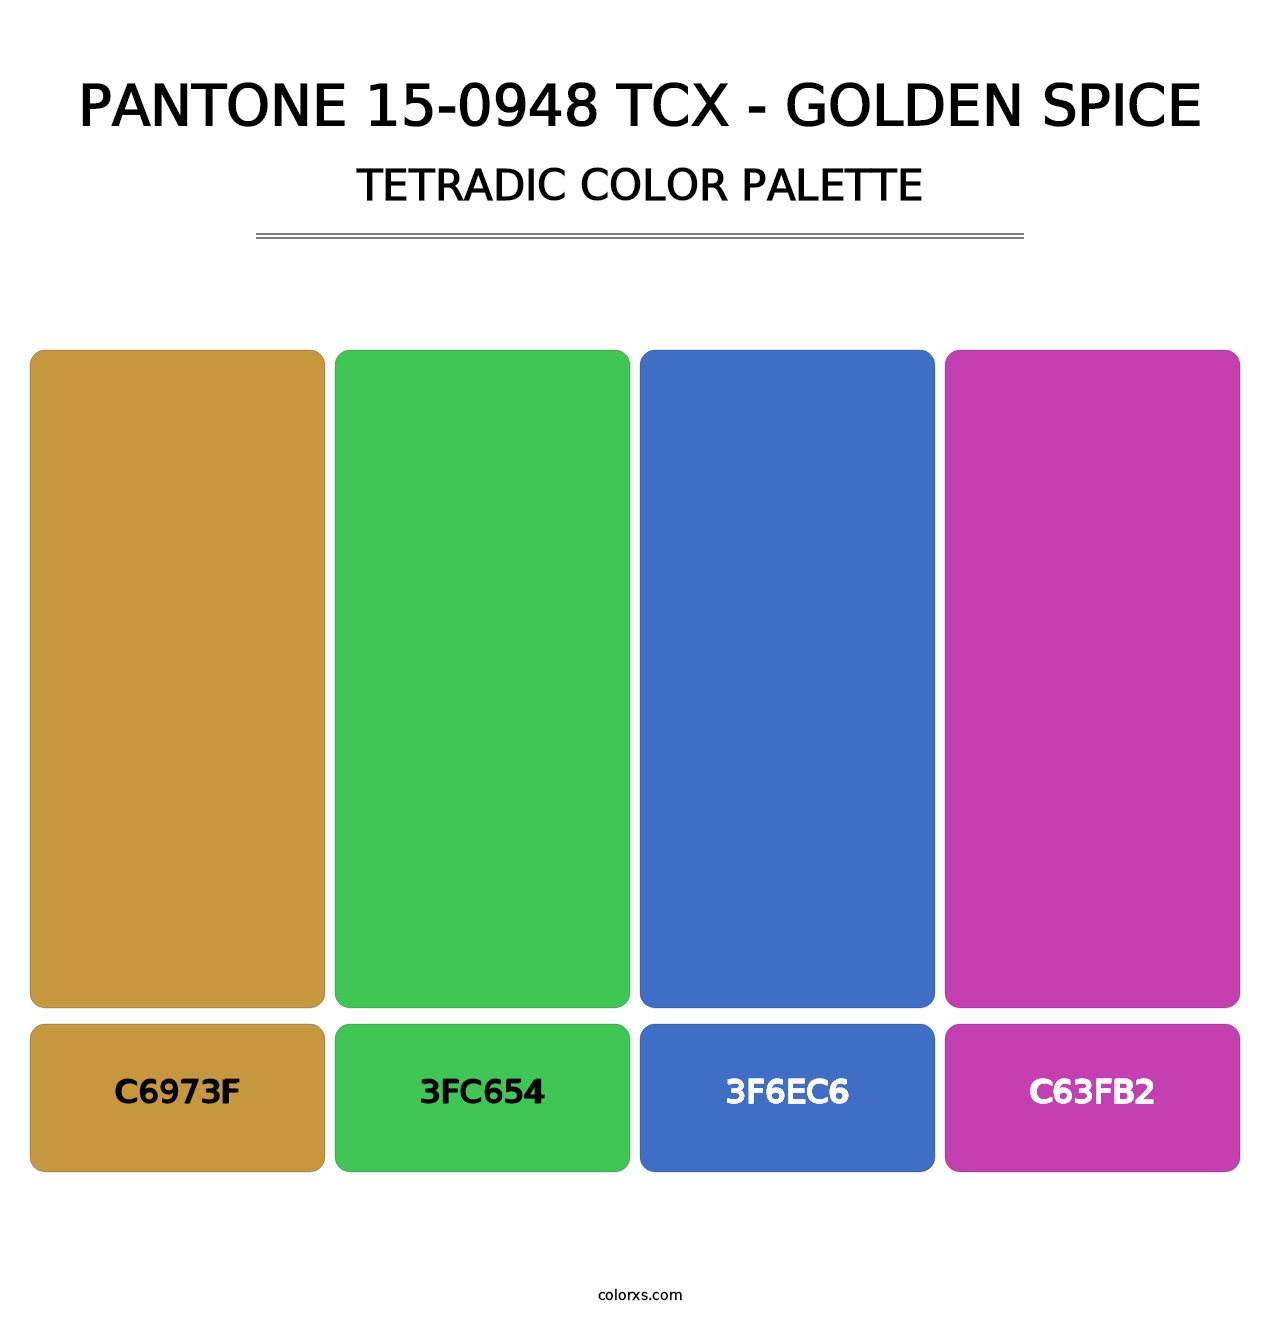 PANTONE 15-0948 TCX - Golden Spice - Tetradic Color Palette